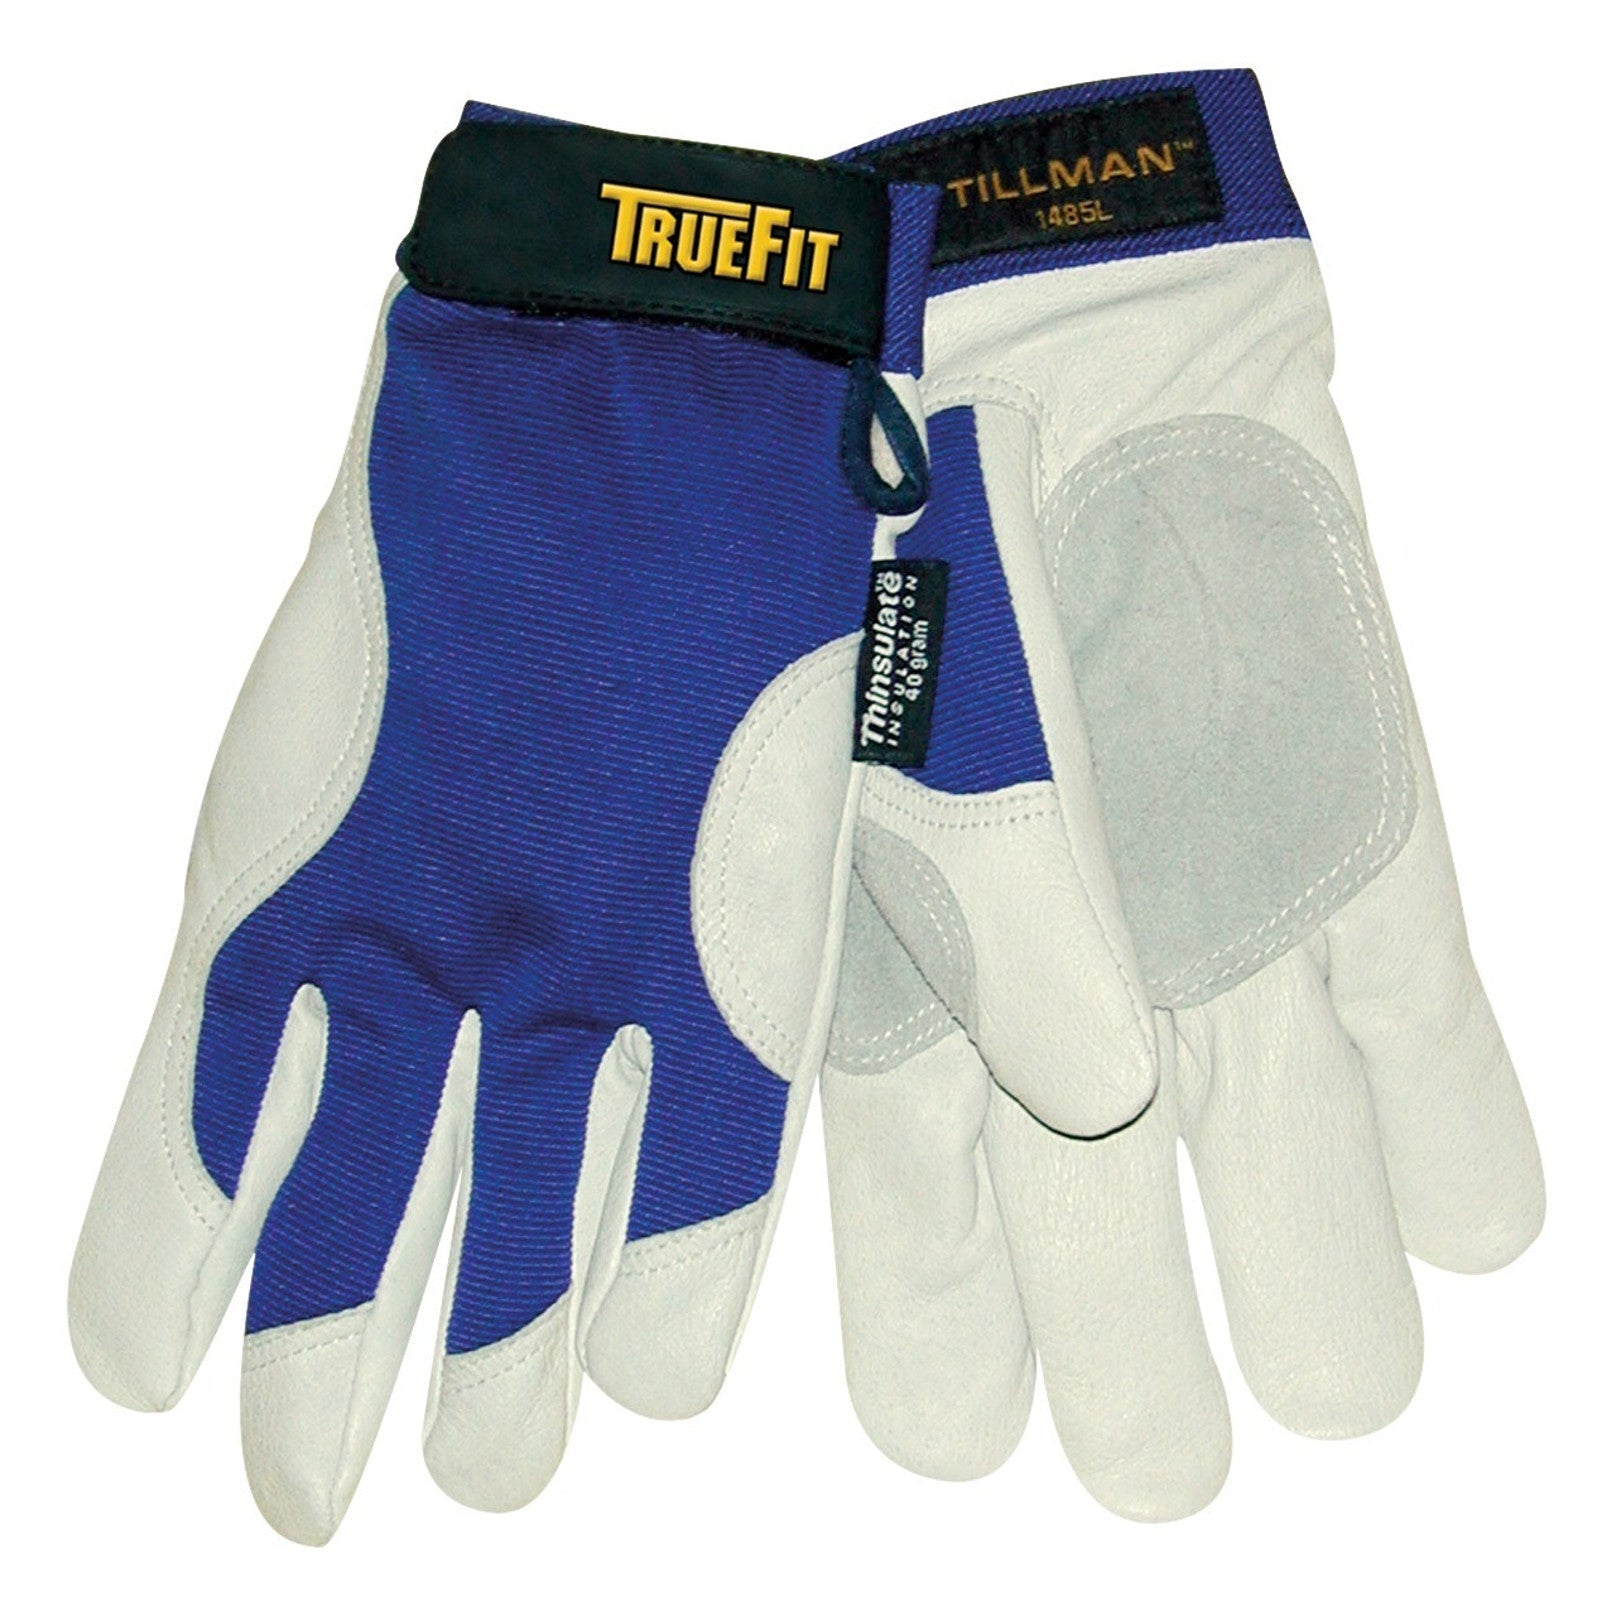 Tillman 1485 TrueFit Top Grain Pigskin Performance Gloves